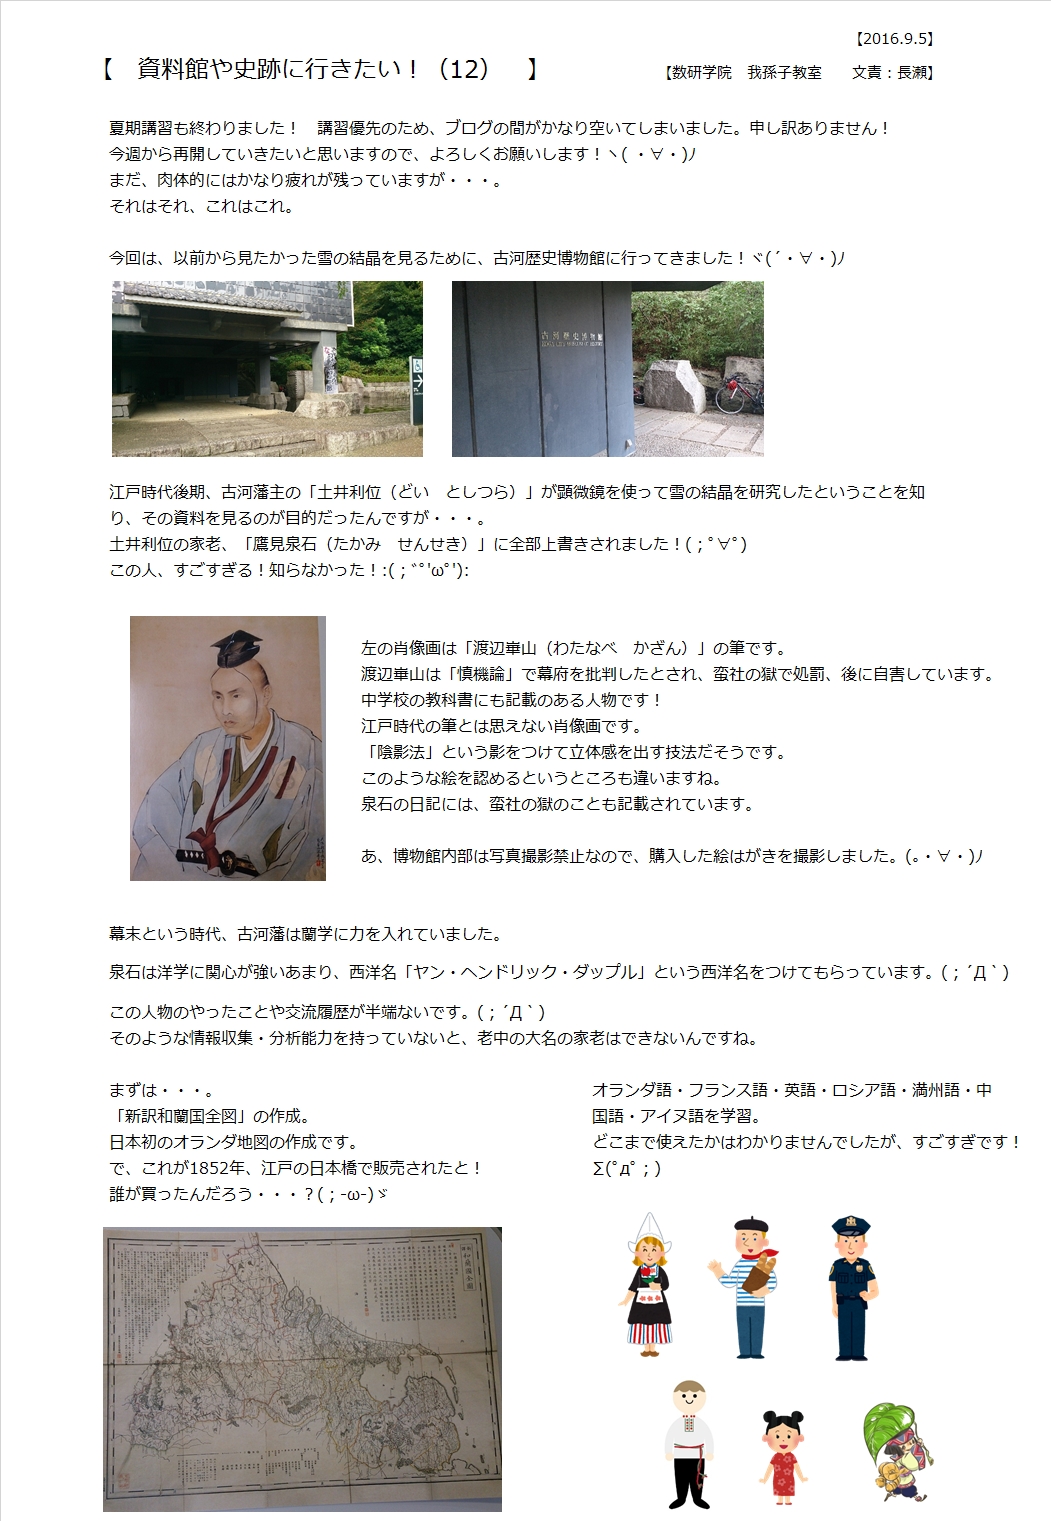 2016.9.5古河歴史博物館①